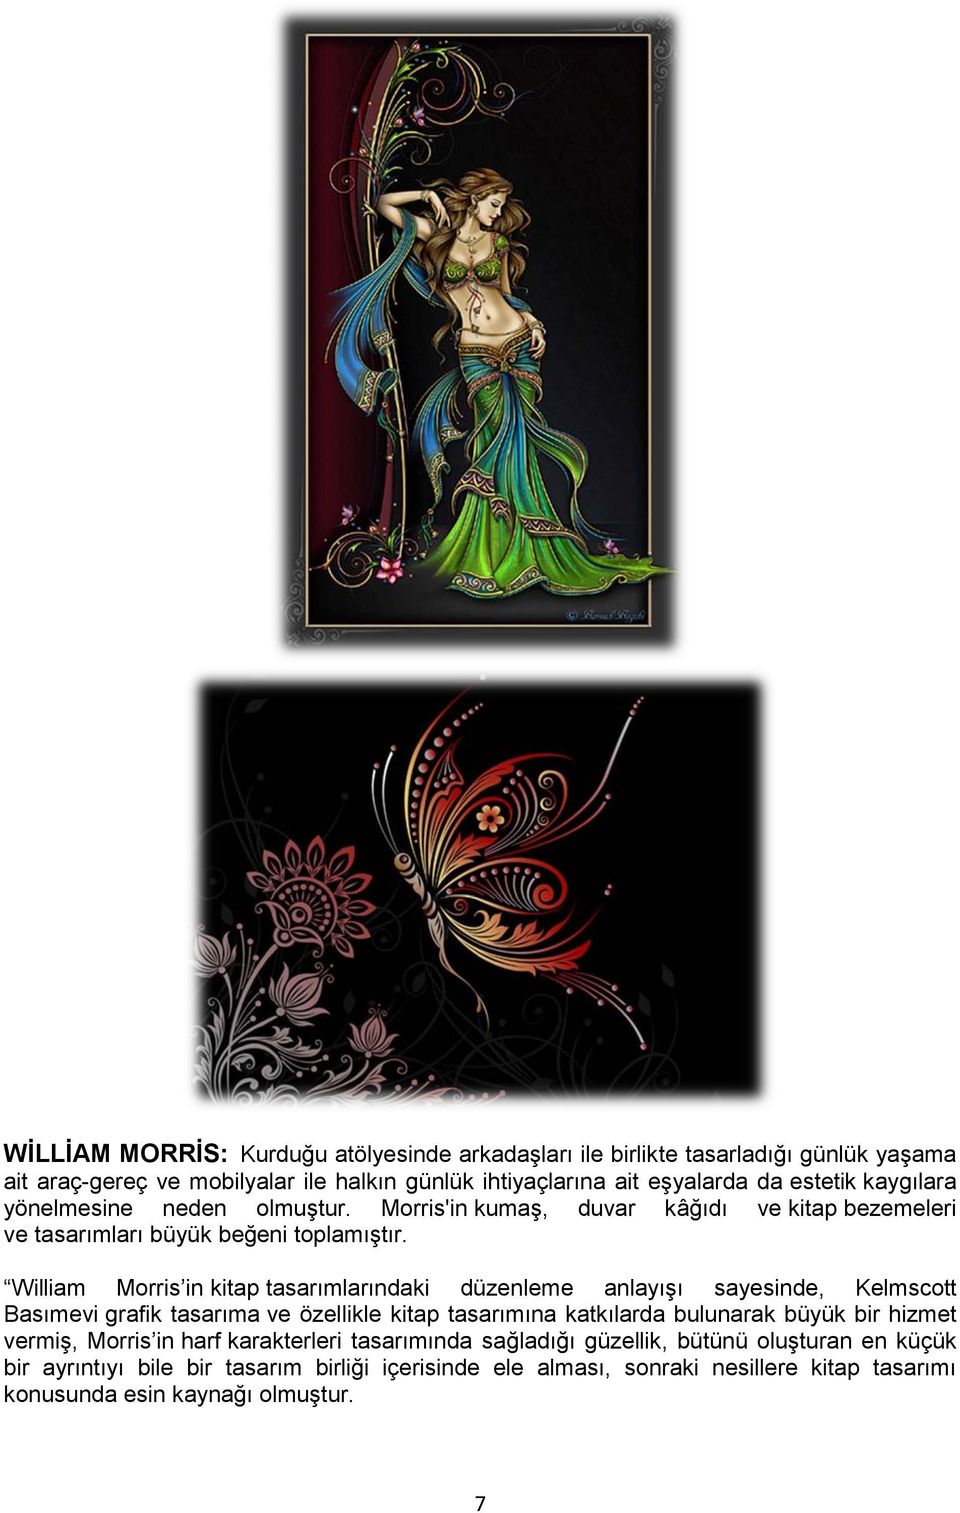 William Morris in kitap tasarımlarındaki düzenleme anlayışı sayesinde, Kelmscott Basımevi grafik tasarıma ve özellikle kitap tasarımına katkılarda bulunarak büyük bir hizmet